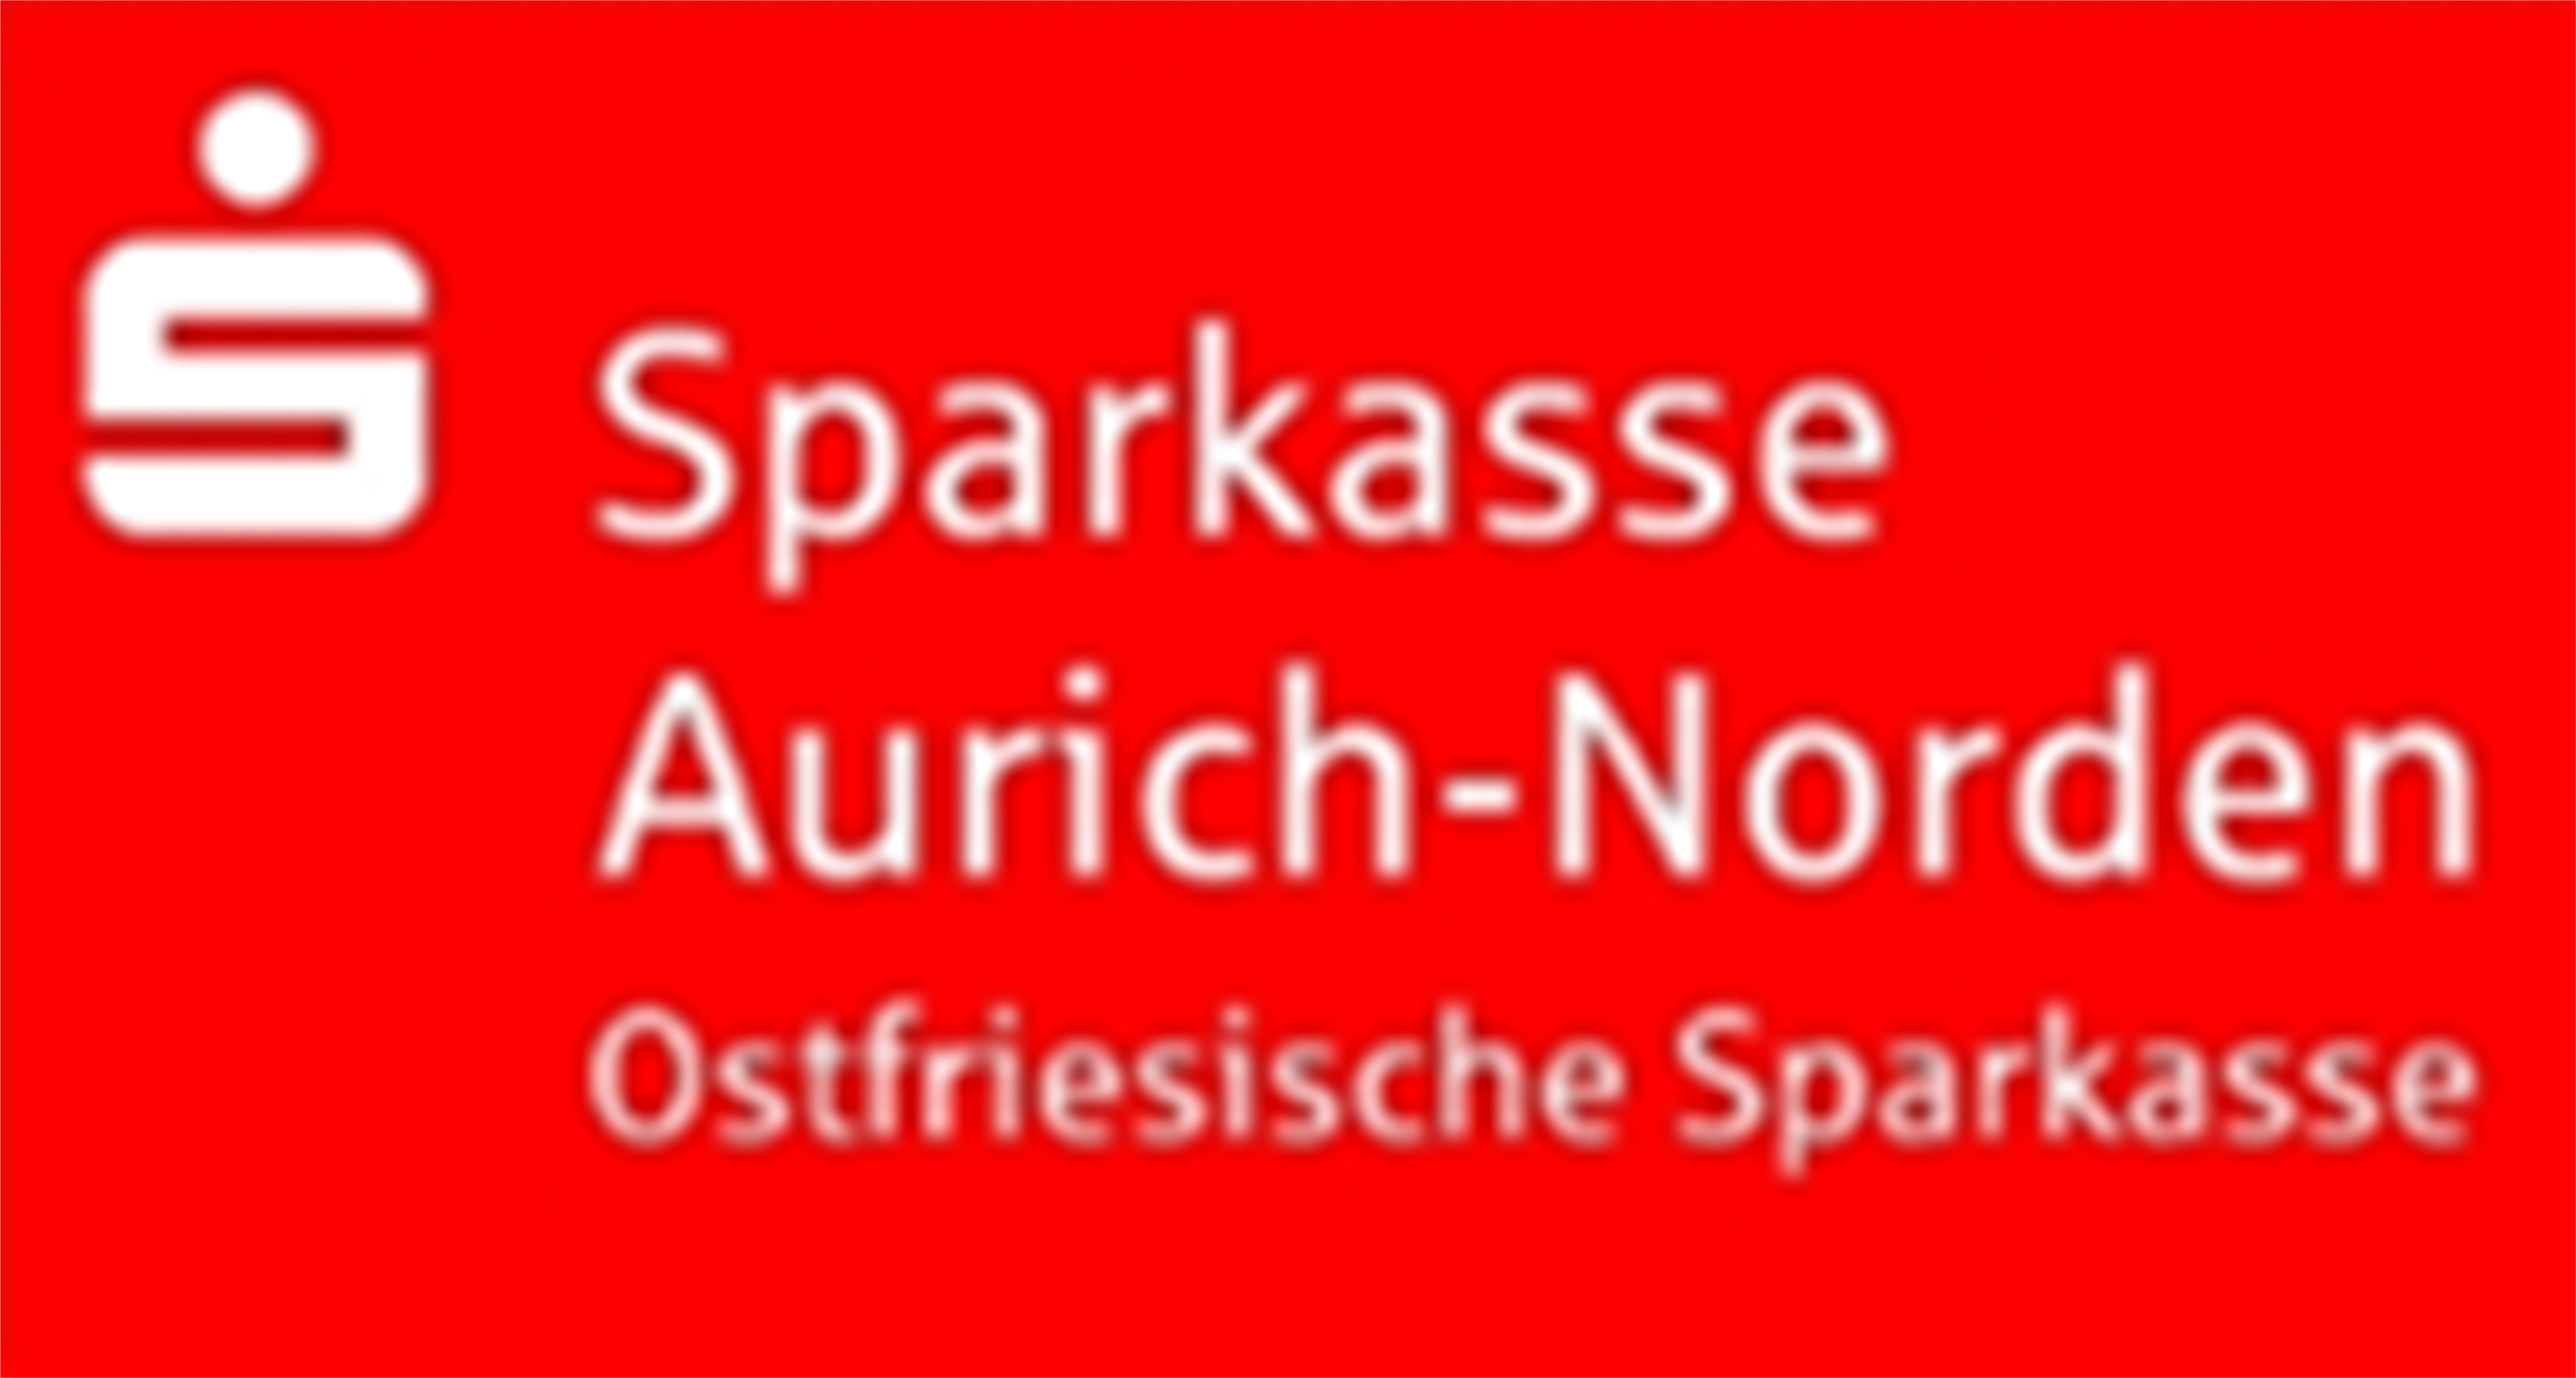 Sparkasse AurichNorden in Ostfriesland Ostfriesische Sparkasse